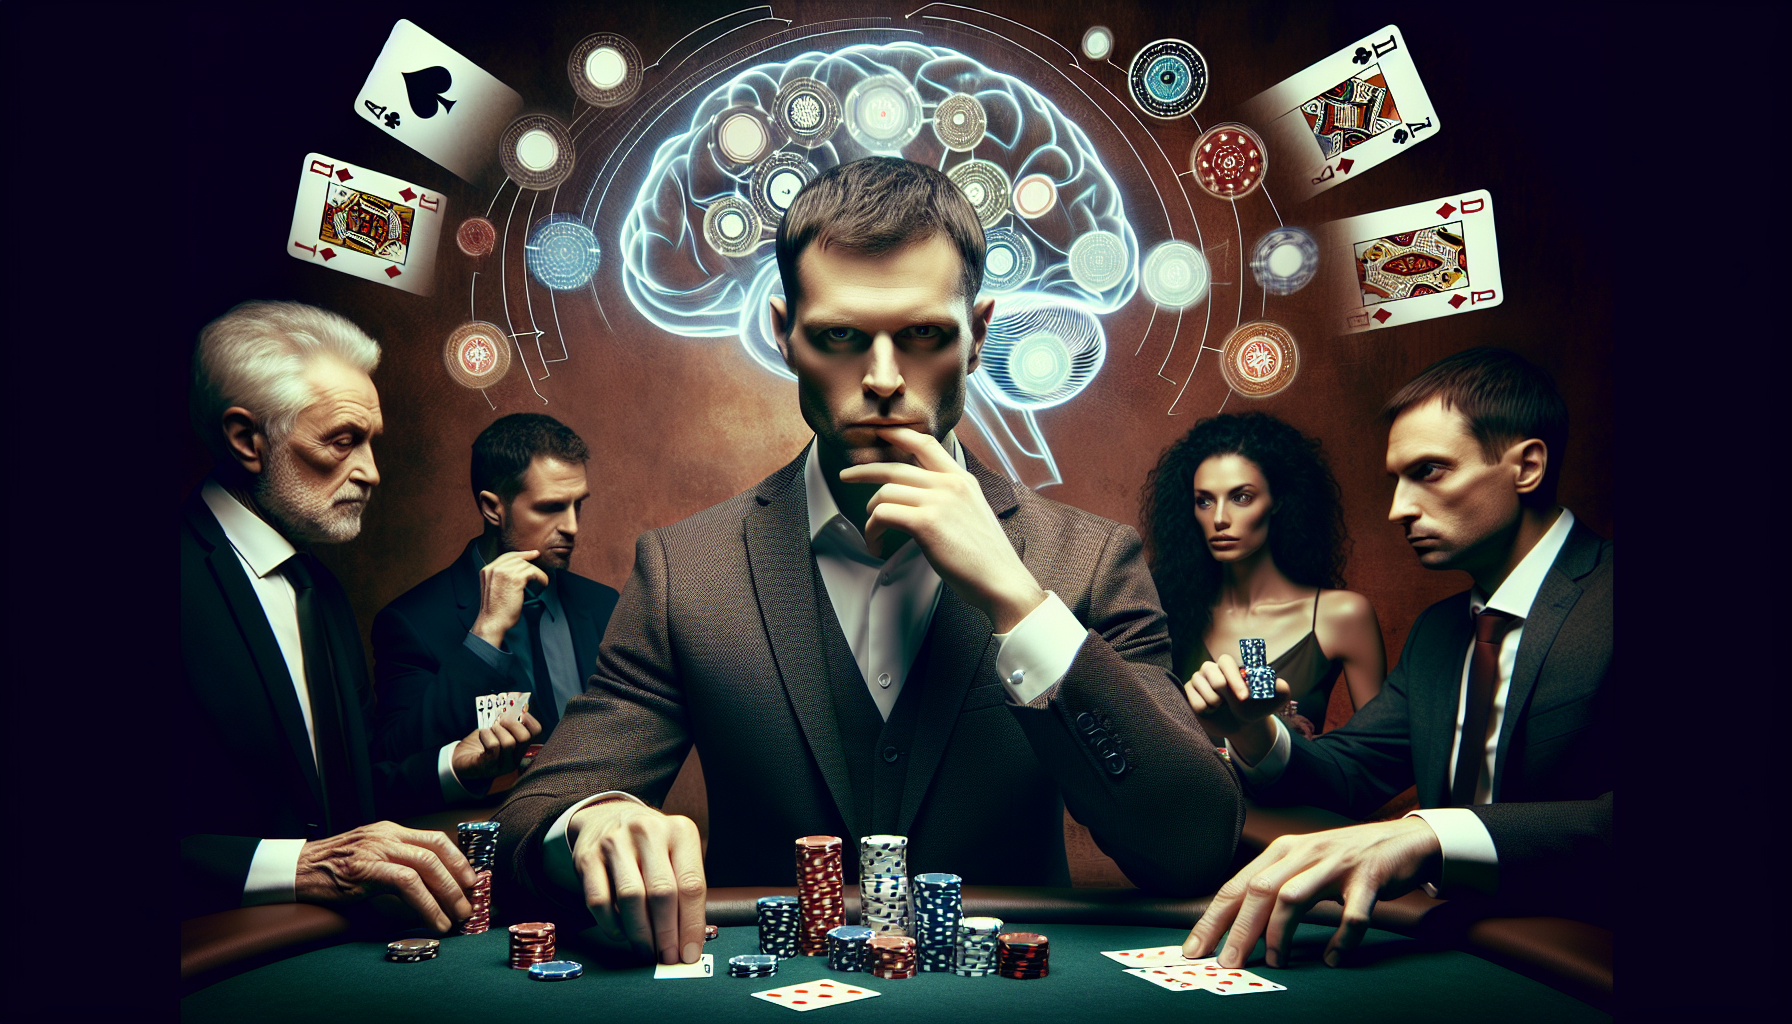 découvrez comment la psychologie influence le jeu de poker. apprenez à maîtriser vos émotions et à décoder celles de vos adversaires pour améliorer votre performance au poker.